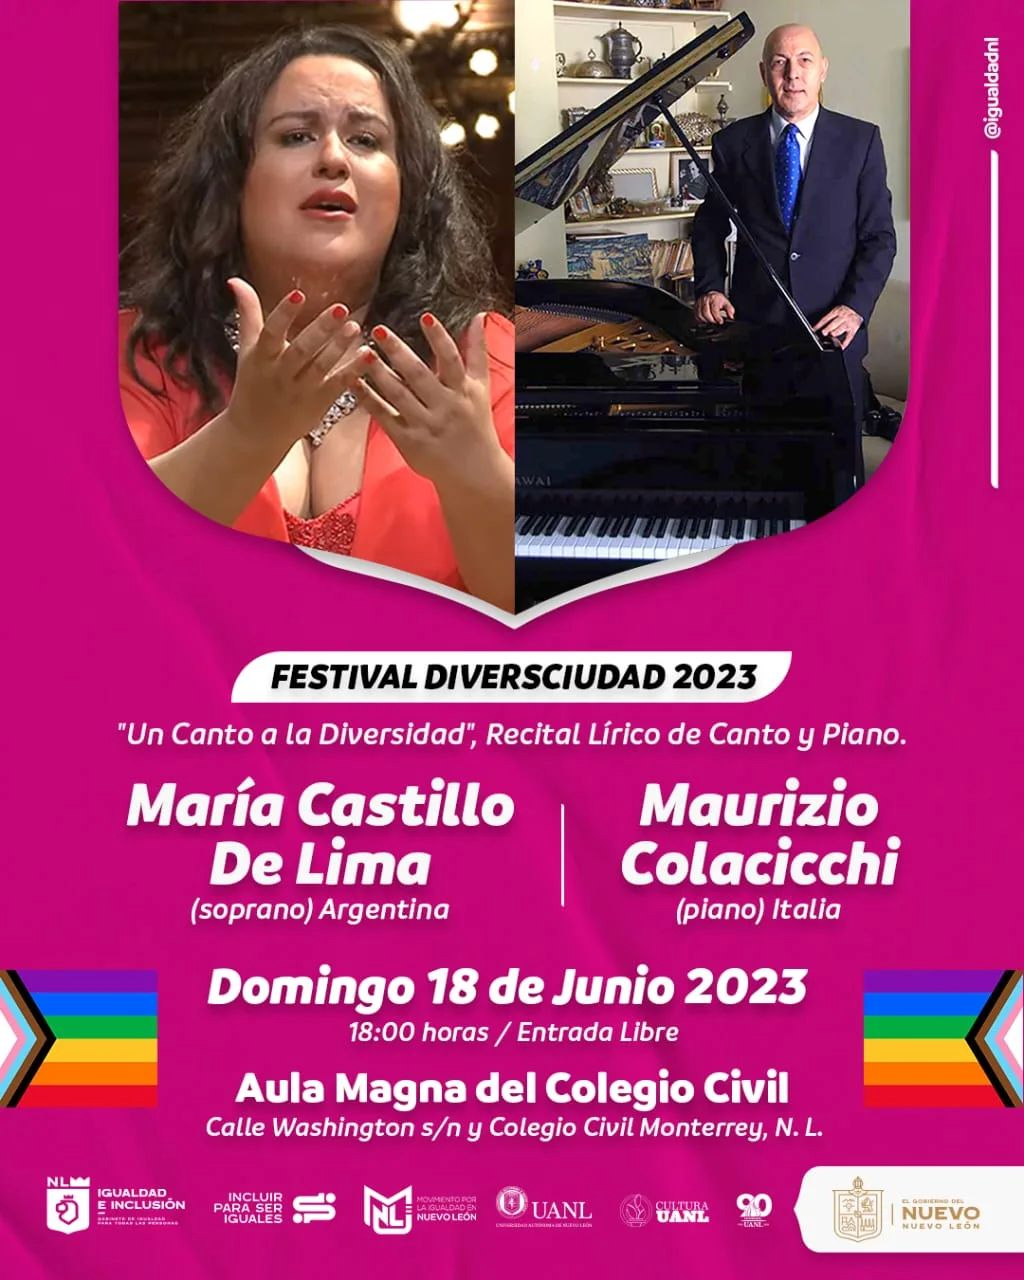 maria-castillo-de-lima-deslumbra-en-mexico-monterrey-contrataciones-management-artistas-be-moved-agency